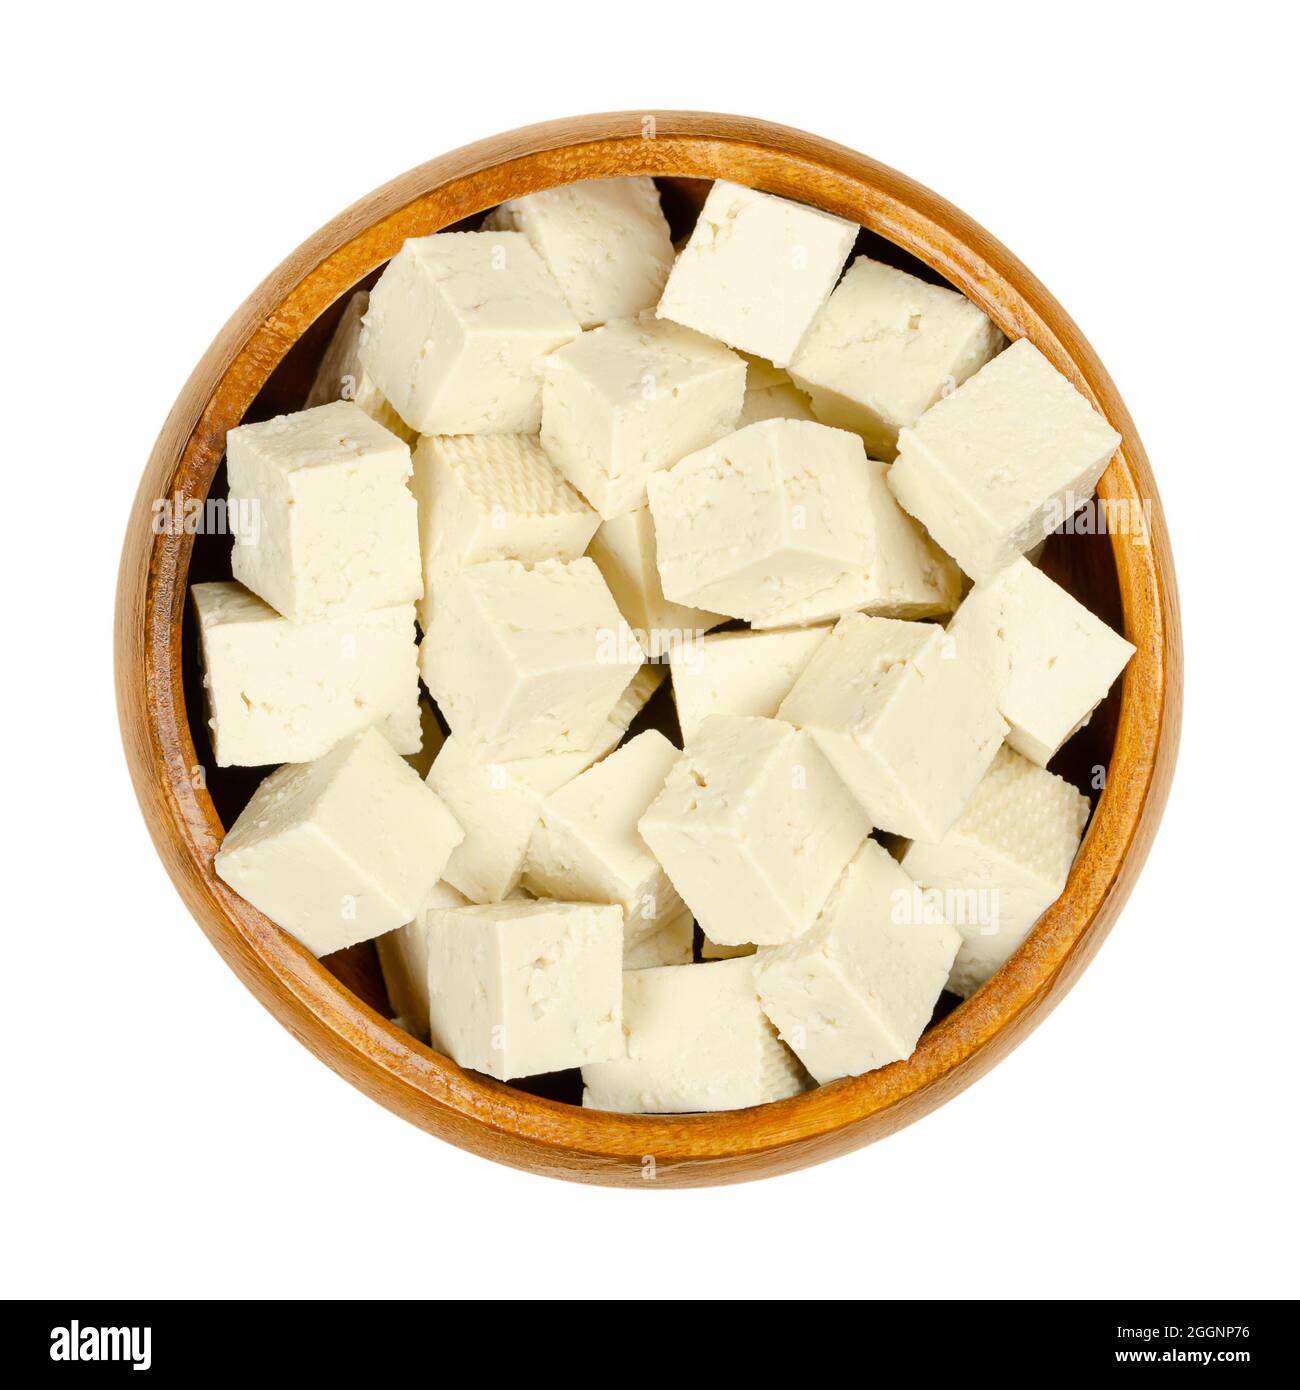 Cubetti di tofu bianco, in una ciotola di legno. Cagliata di fagioli a dadini, latte di soia coagulato, pressata in blocchi bianchi di diversa morbidezza. Foto Stock